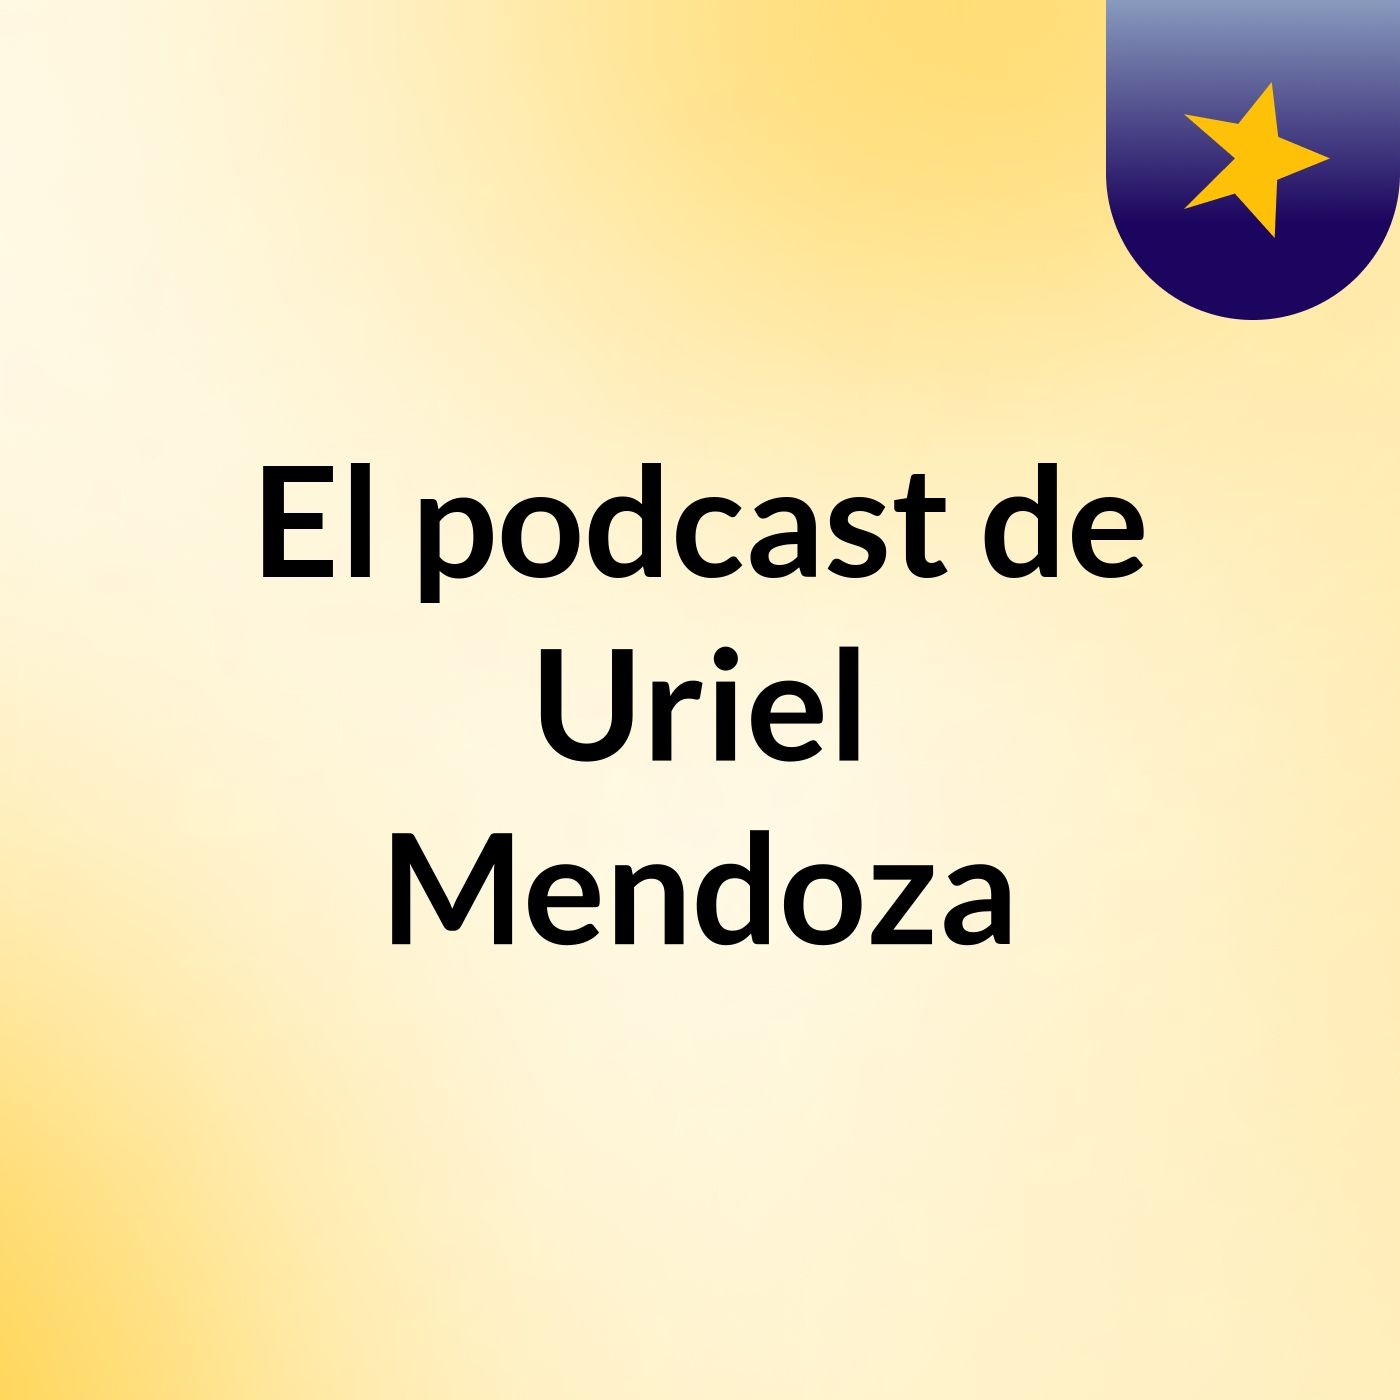 El podcast de Uriel Mendoza